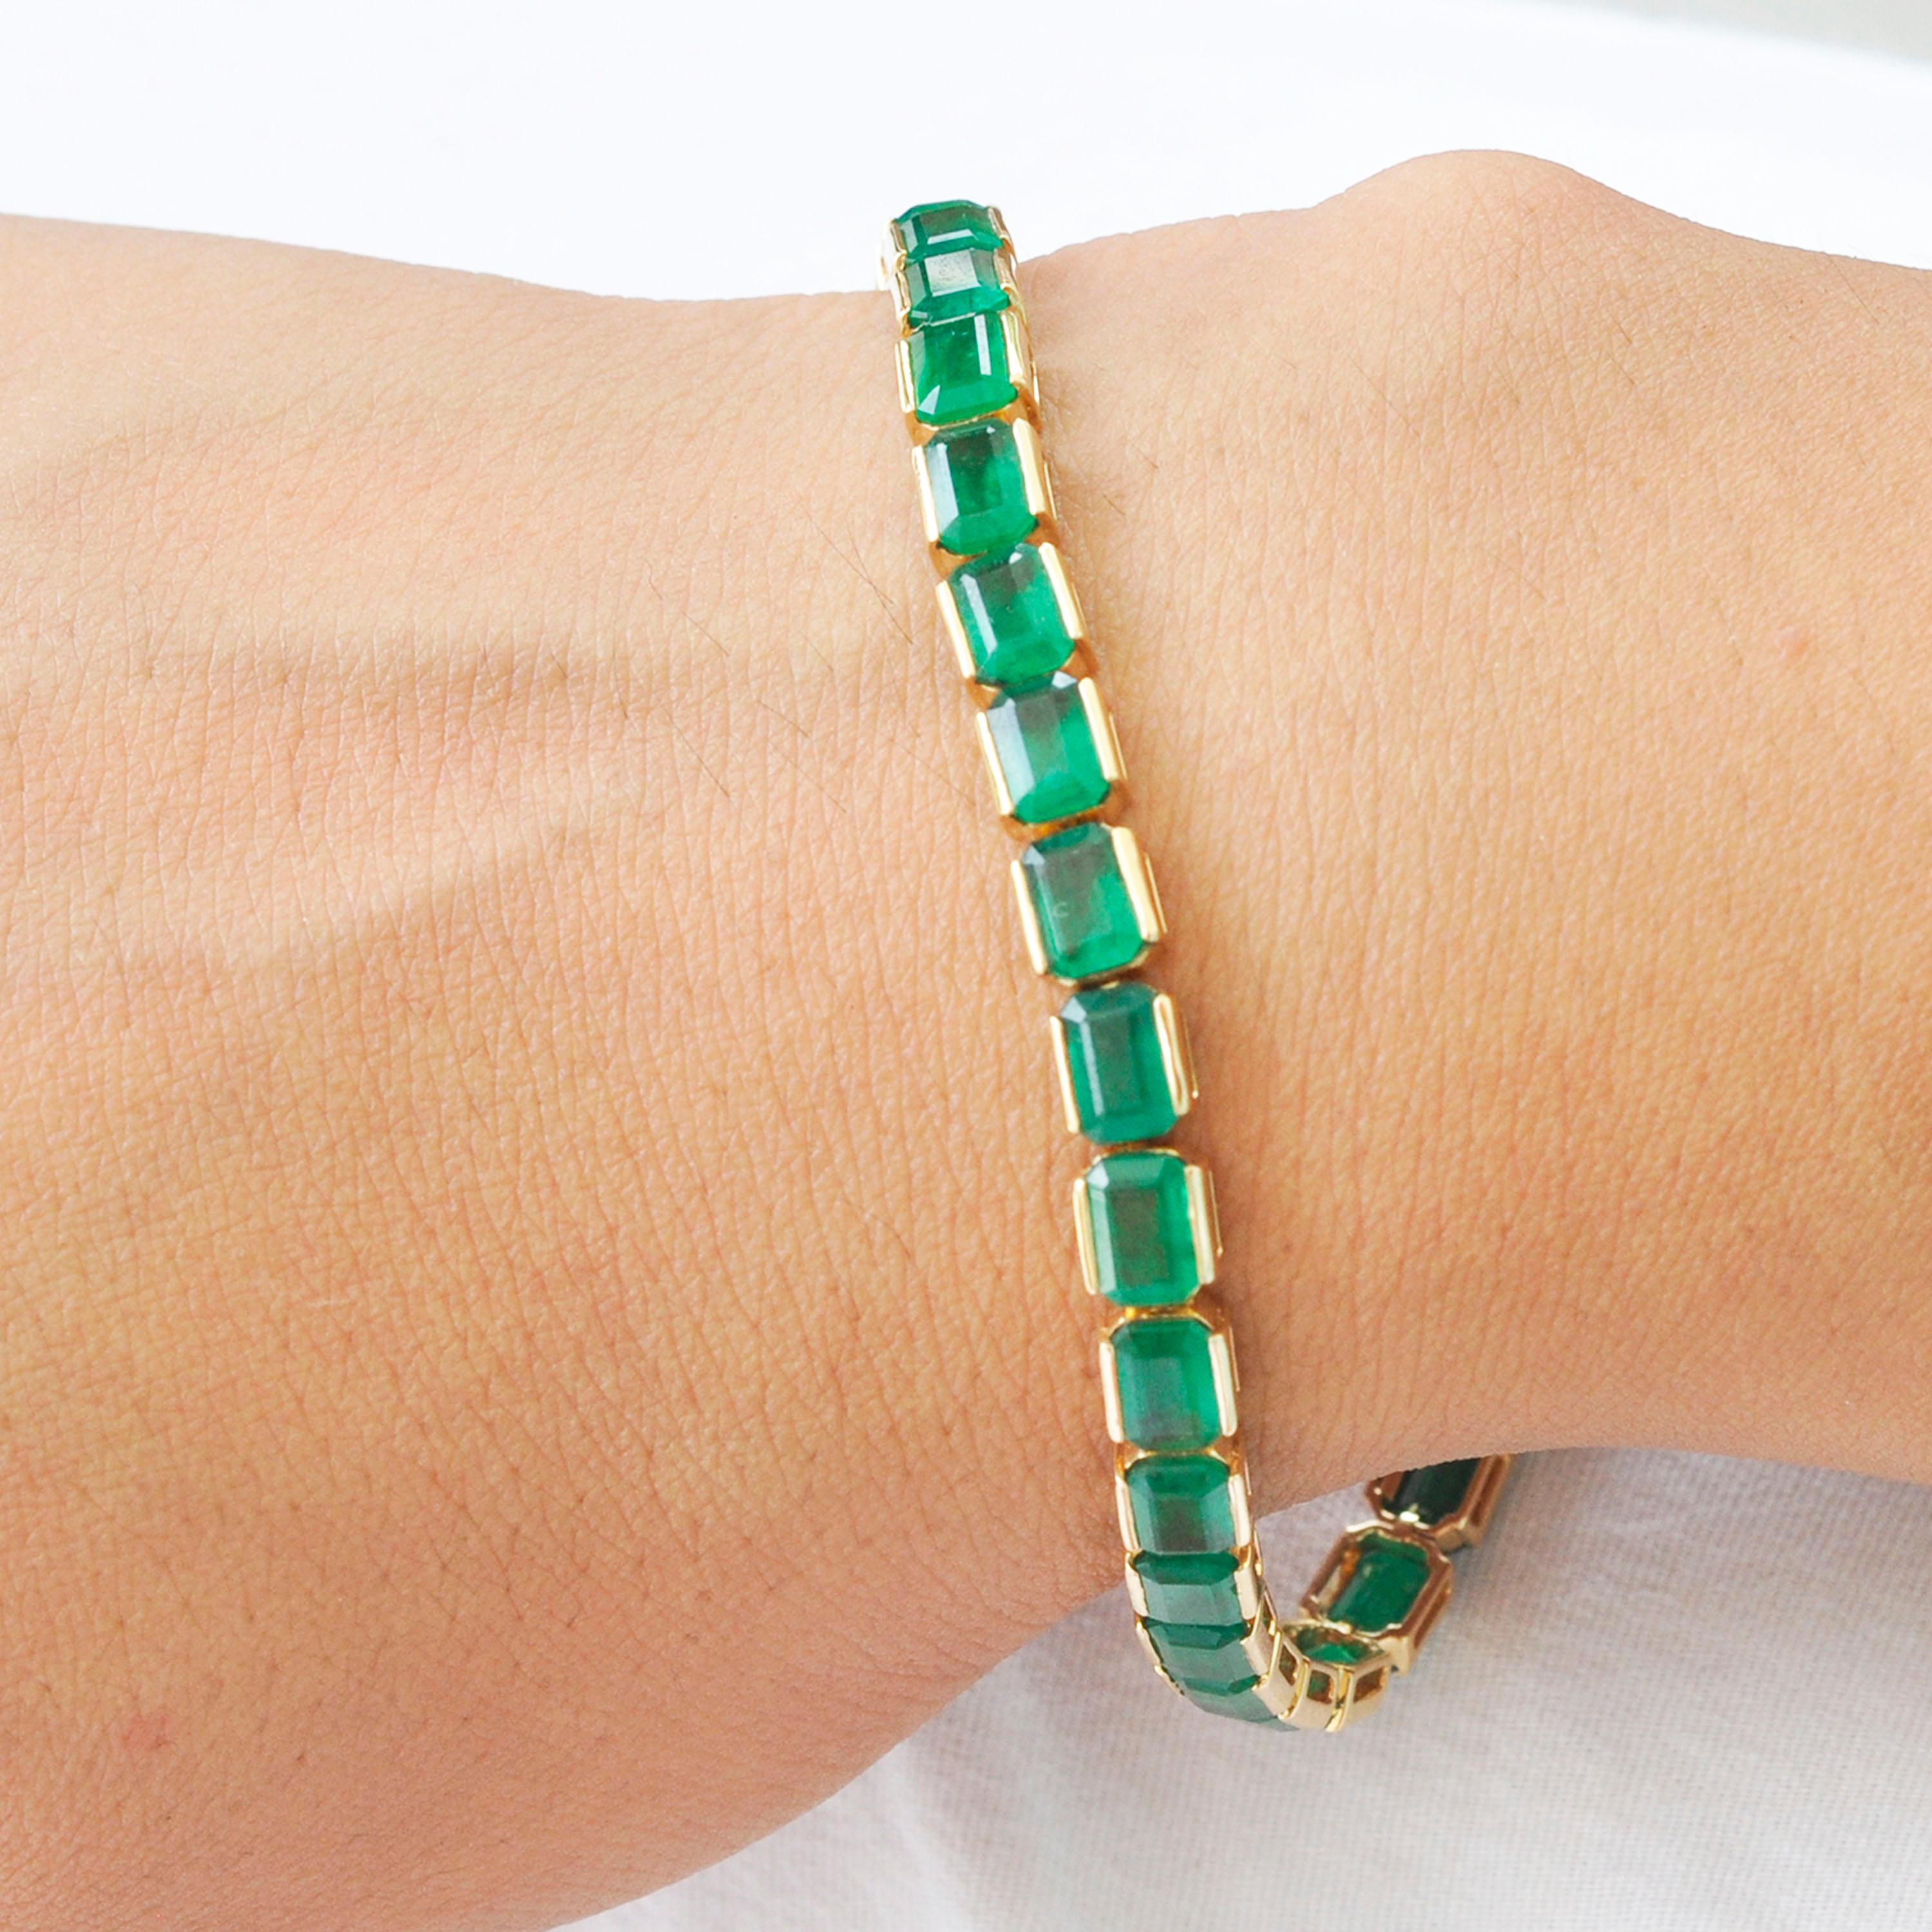 Das Armband aus 18-karätigem Gold mit 16,97 Karat brasilianischem Smaragd in achteckiger Form ist ein Meisterwerk der Schmuckkunst, das Luxus und Eleganz ausstrahlt. Dieses Armband präsentiert eine atemberaubende Kollektion üppiger, lebhaft grüner